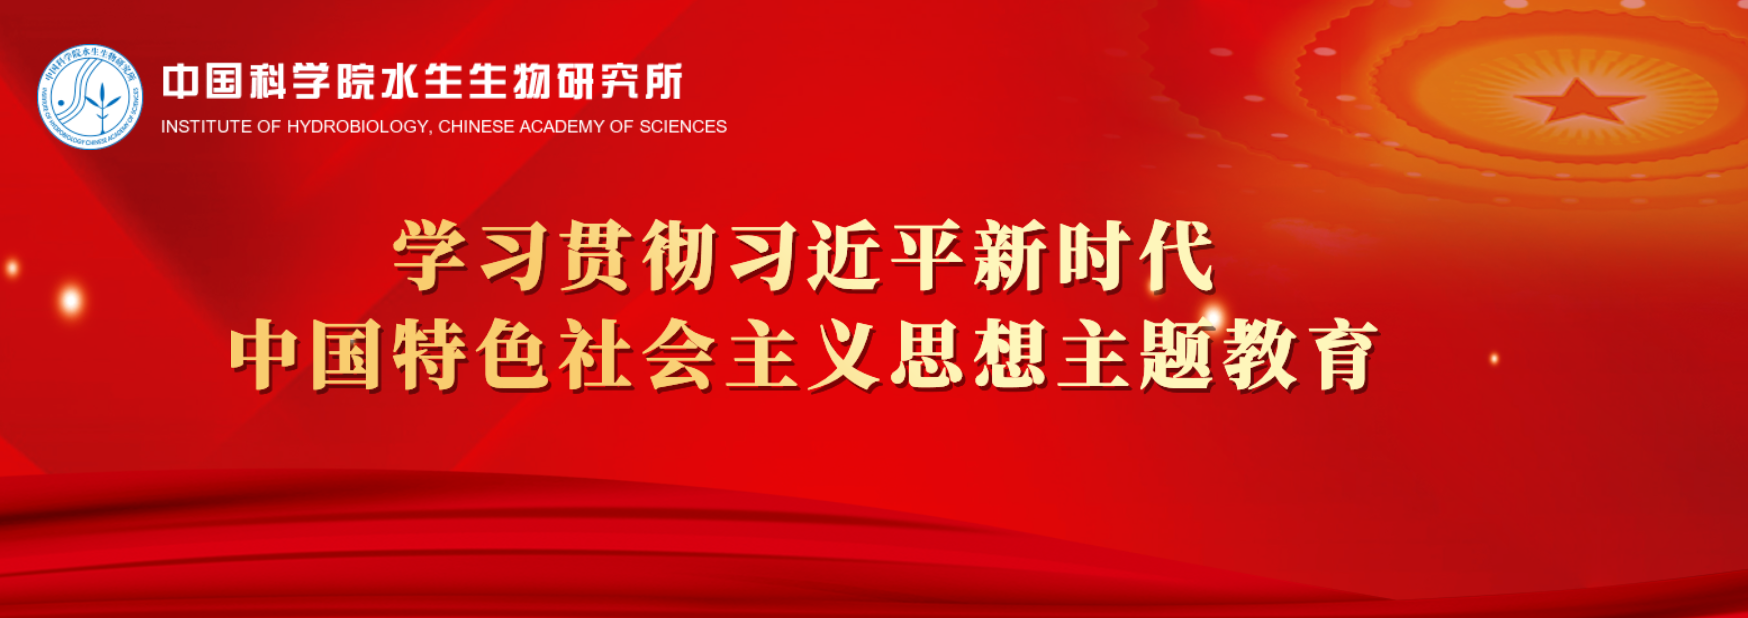 中国科学院水生生物研究所深入开展学习贯彻习近平新时代中国特色社会主义思想主题教育